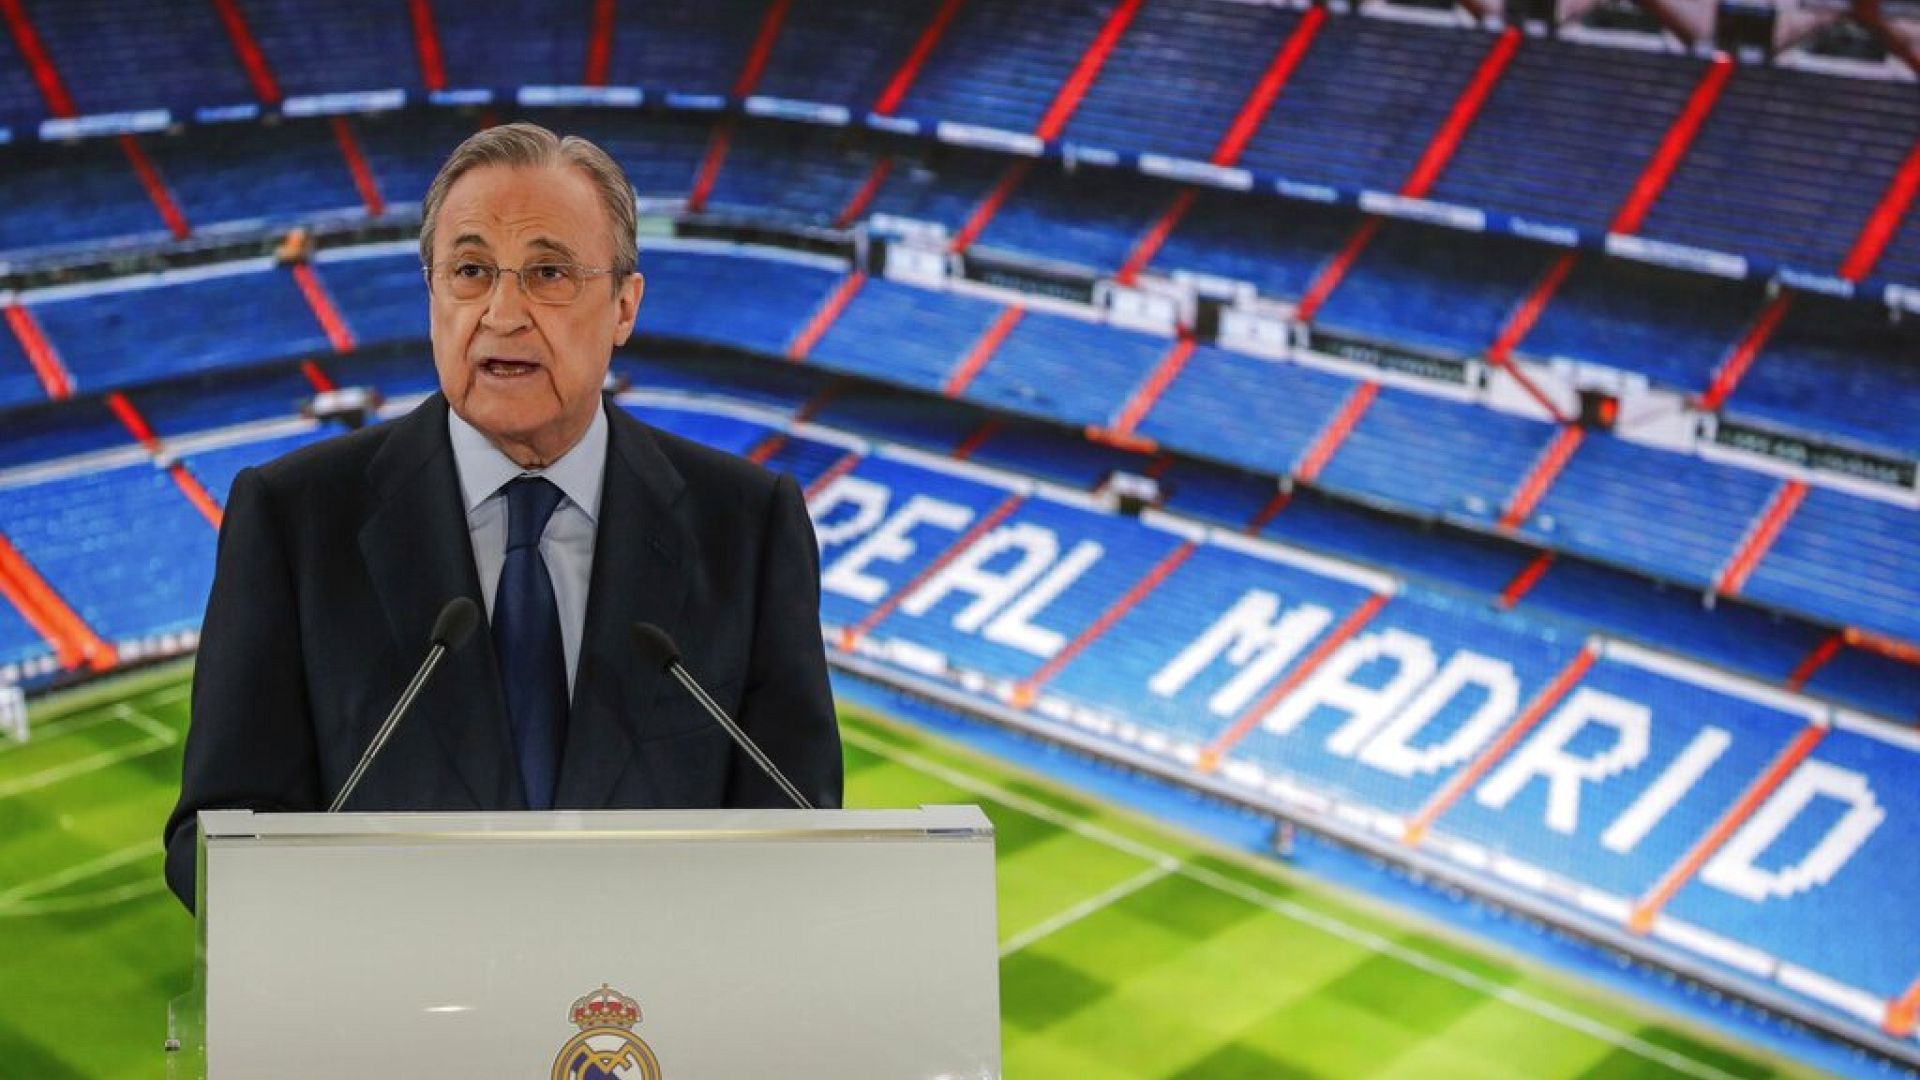 Süper Lig tartışması: Fransa'nın bildirisine İspanya hariç 25 AB üyesinden destek